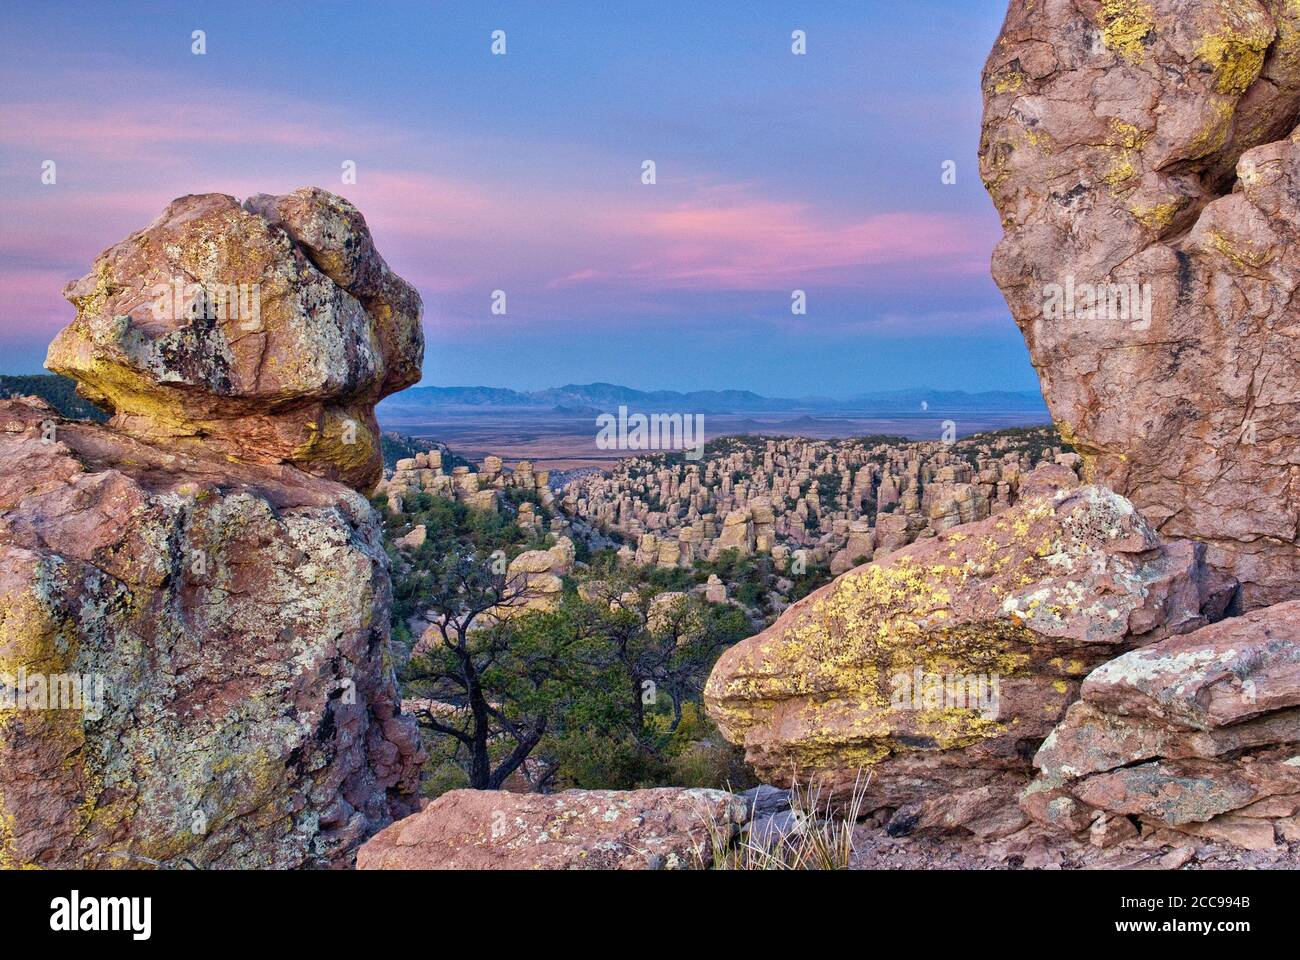 Rochers de rhyolite à Massai point au monument national de Chiricahua avec Sulphur Spring Valley Dragoon Mountains à distance, Arizona, États-Unis Banque D'Images